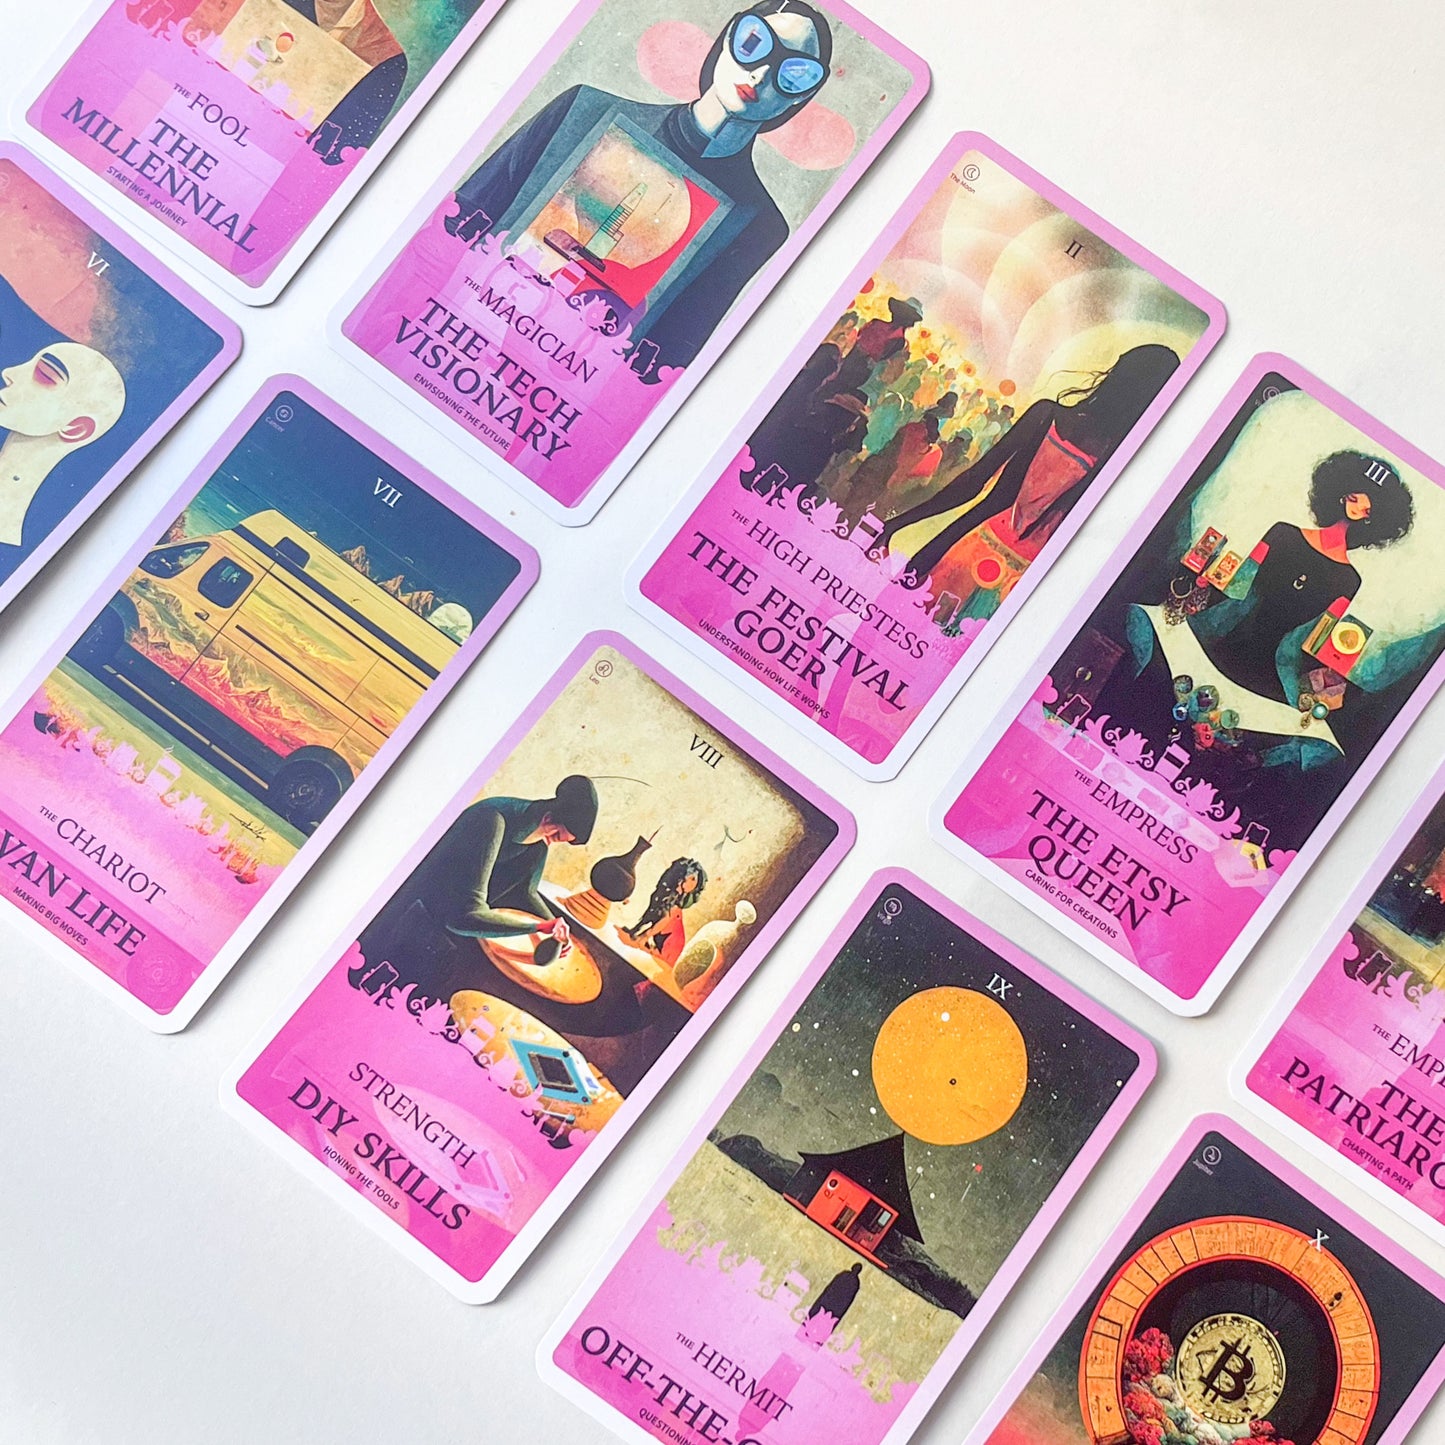 Sample images of the major arcana millennial tarot deck